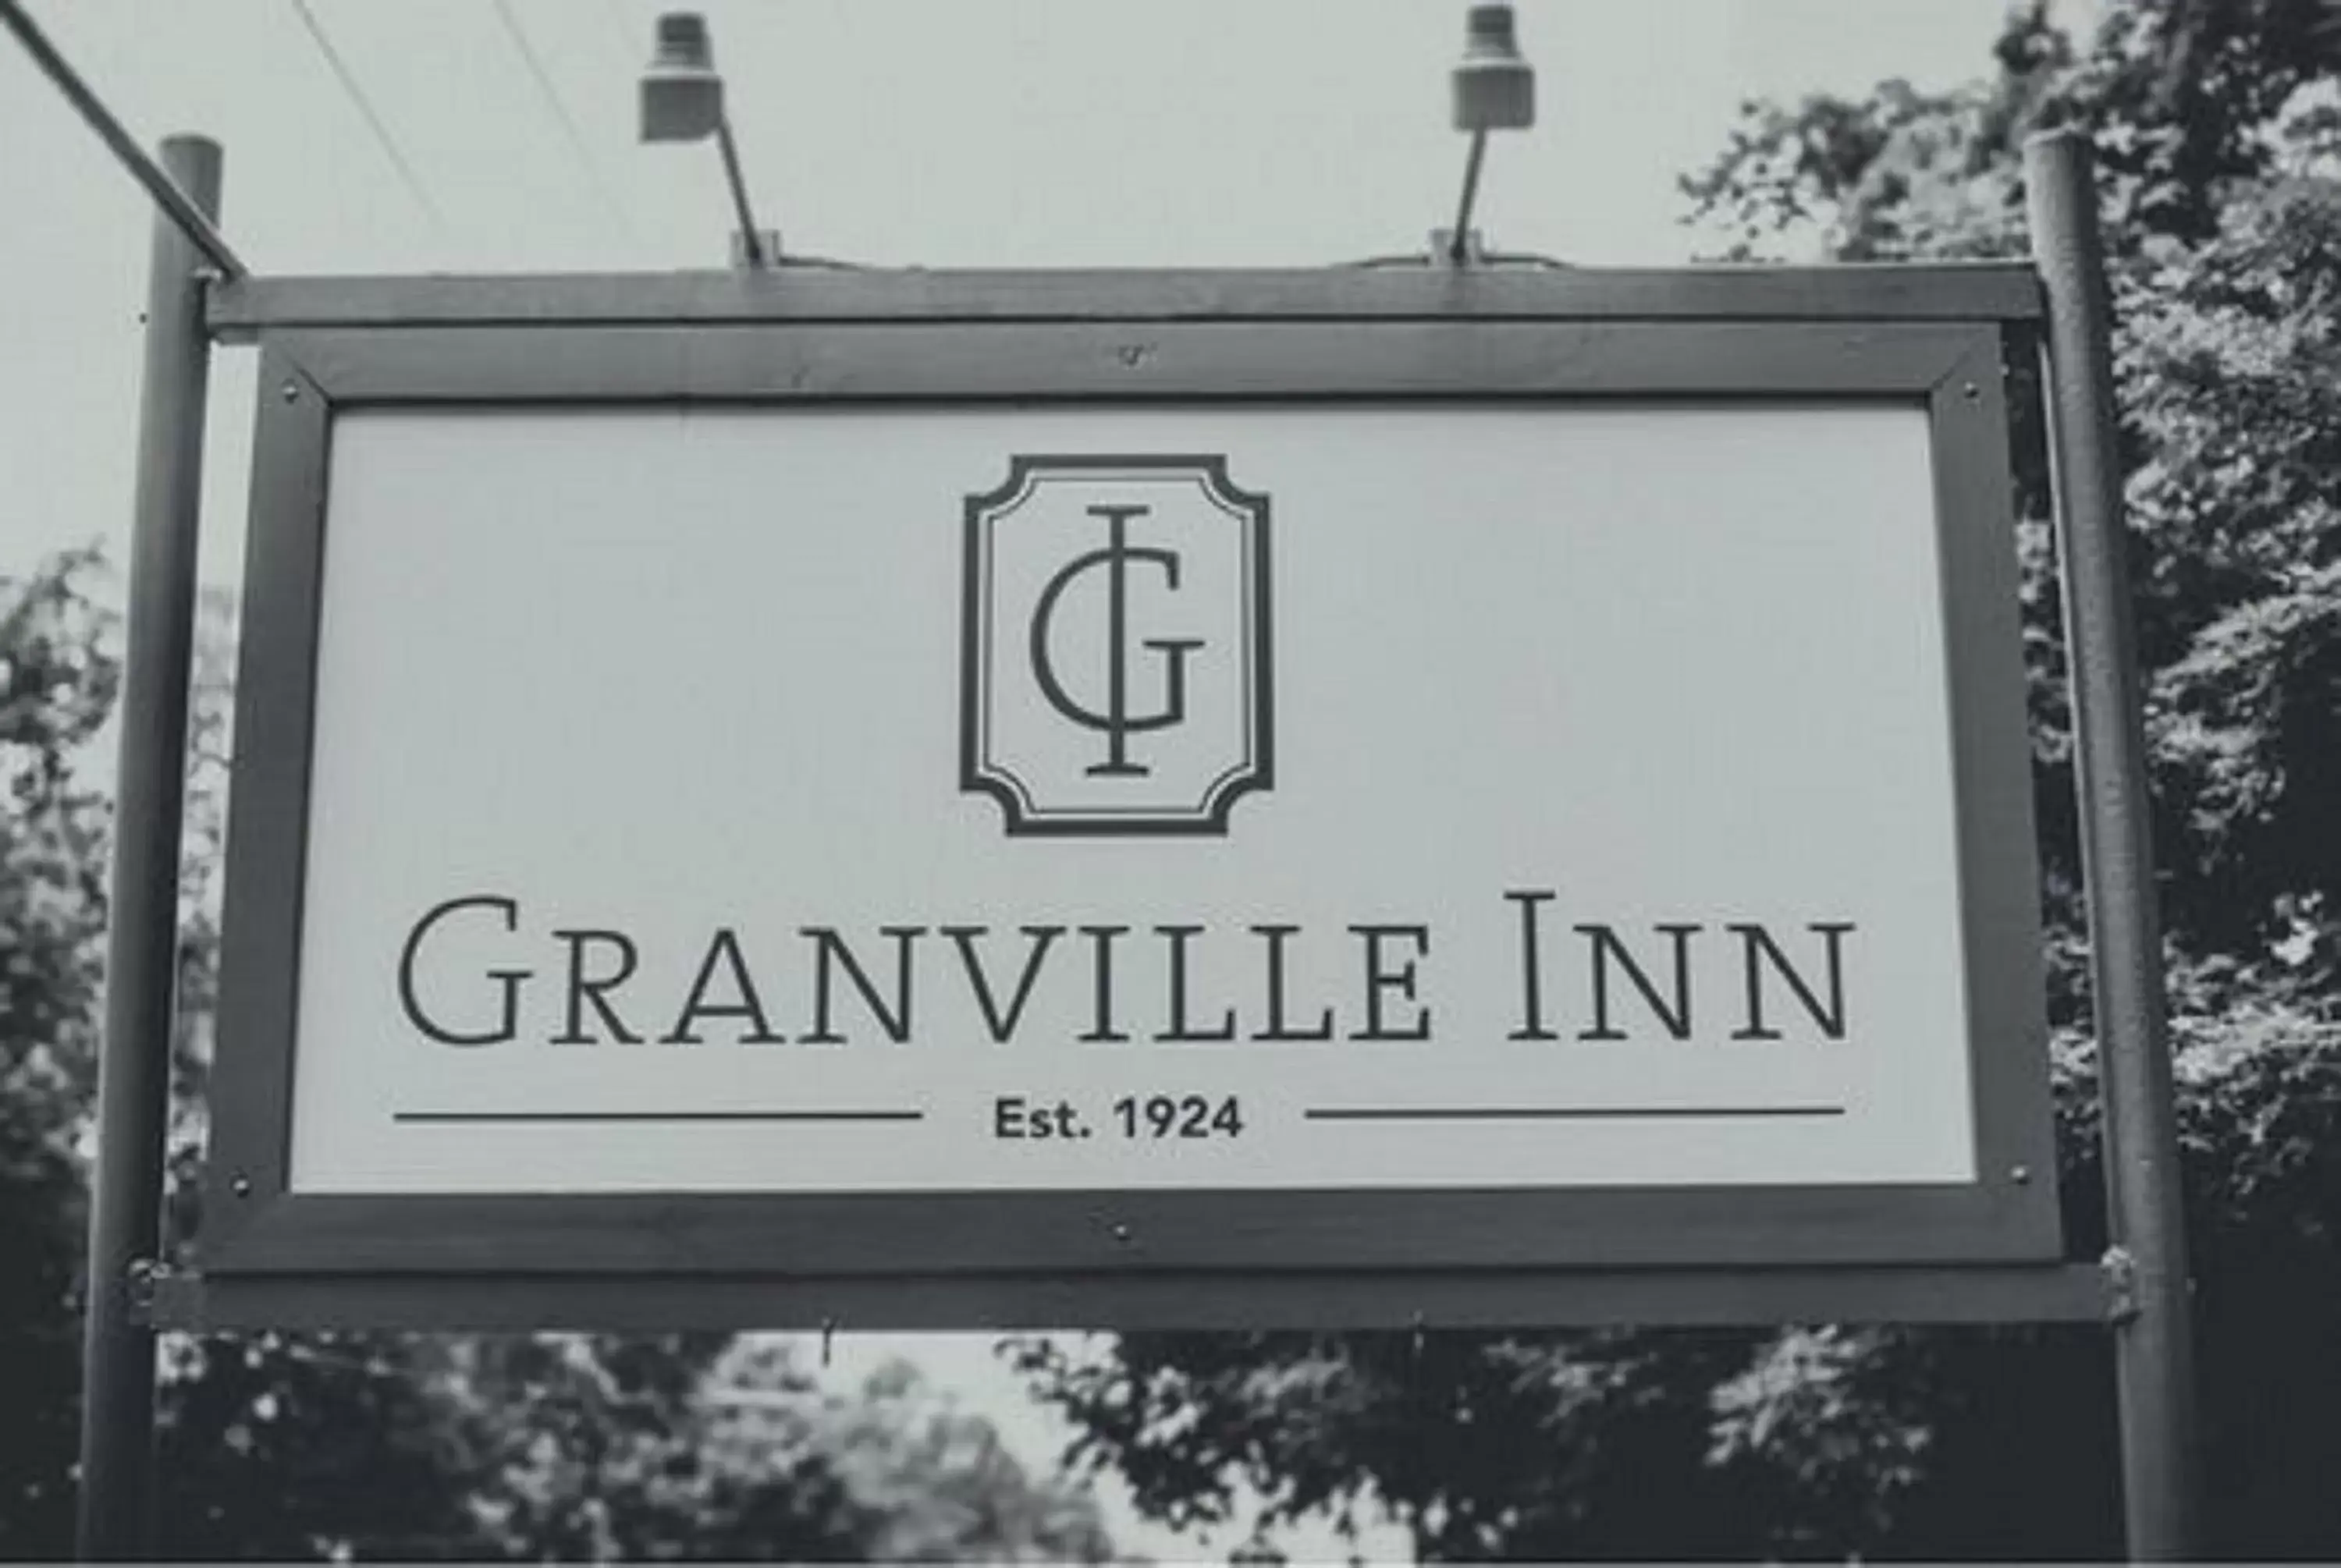 Property logo or sign, Property Logo/Sign in Granville Inn